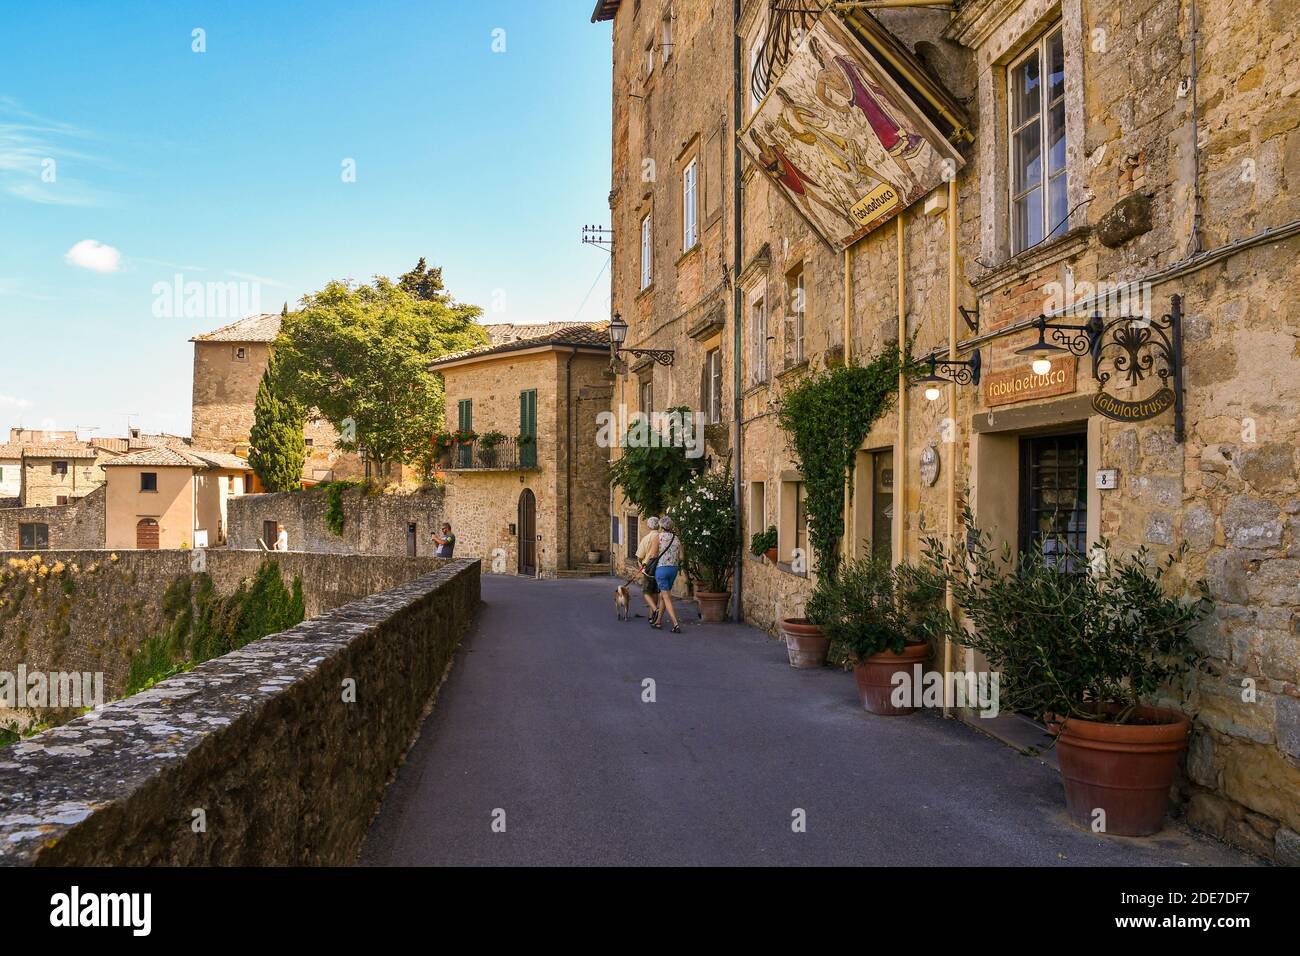 Une ruelle étroite dans le centre historique de l'ancienne ville étrusque de Volterra avec les maisons typiques en pierre et en brique en été, Pise, Toscane, Italie Banque D'Images